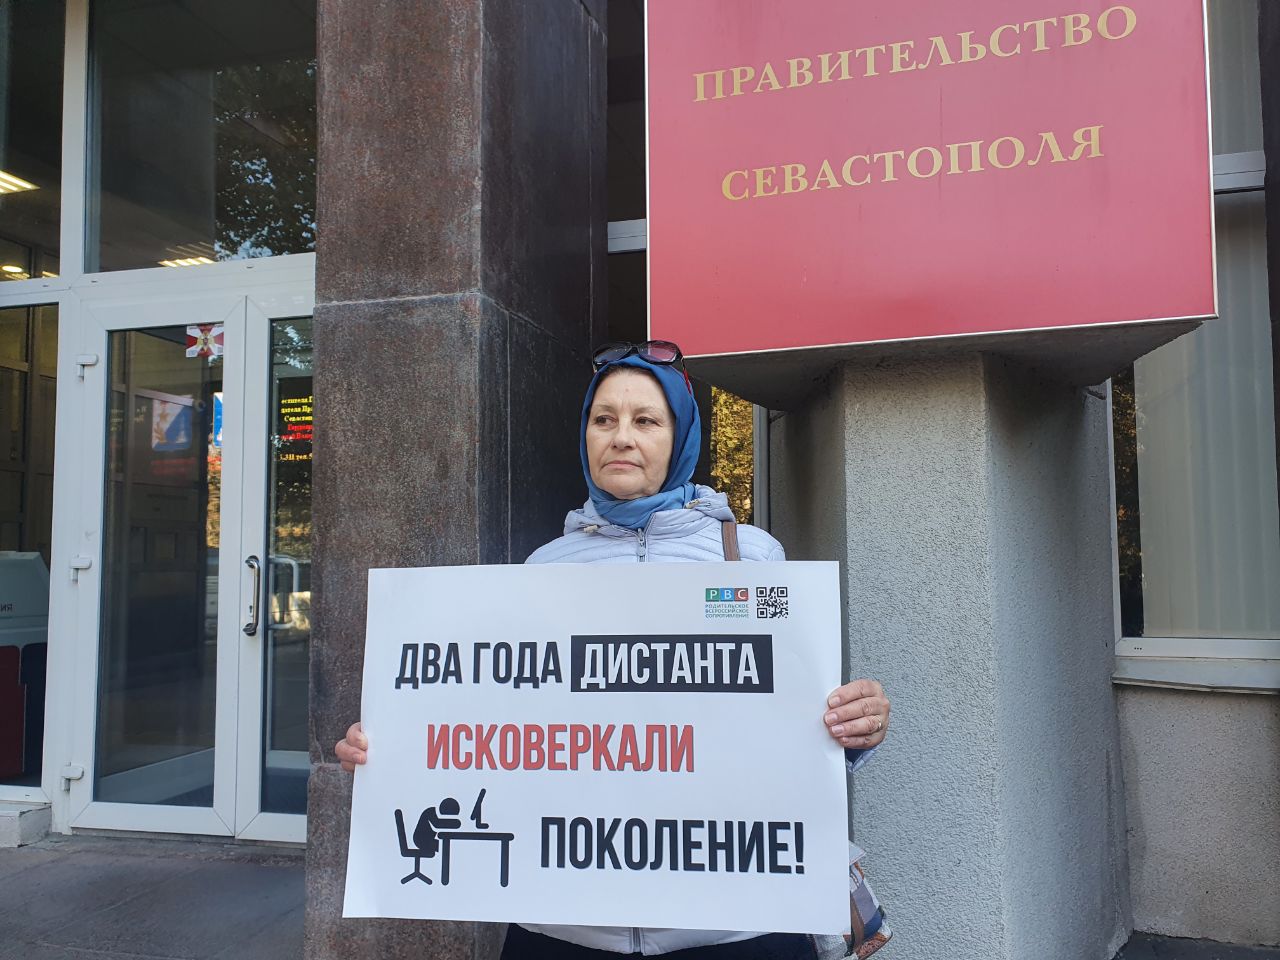 Одиночный пикет против «дистанционки» возле здания правительства Севастополя